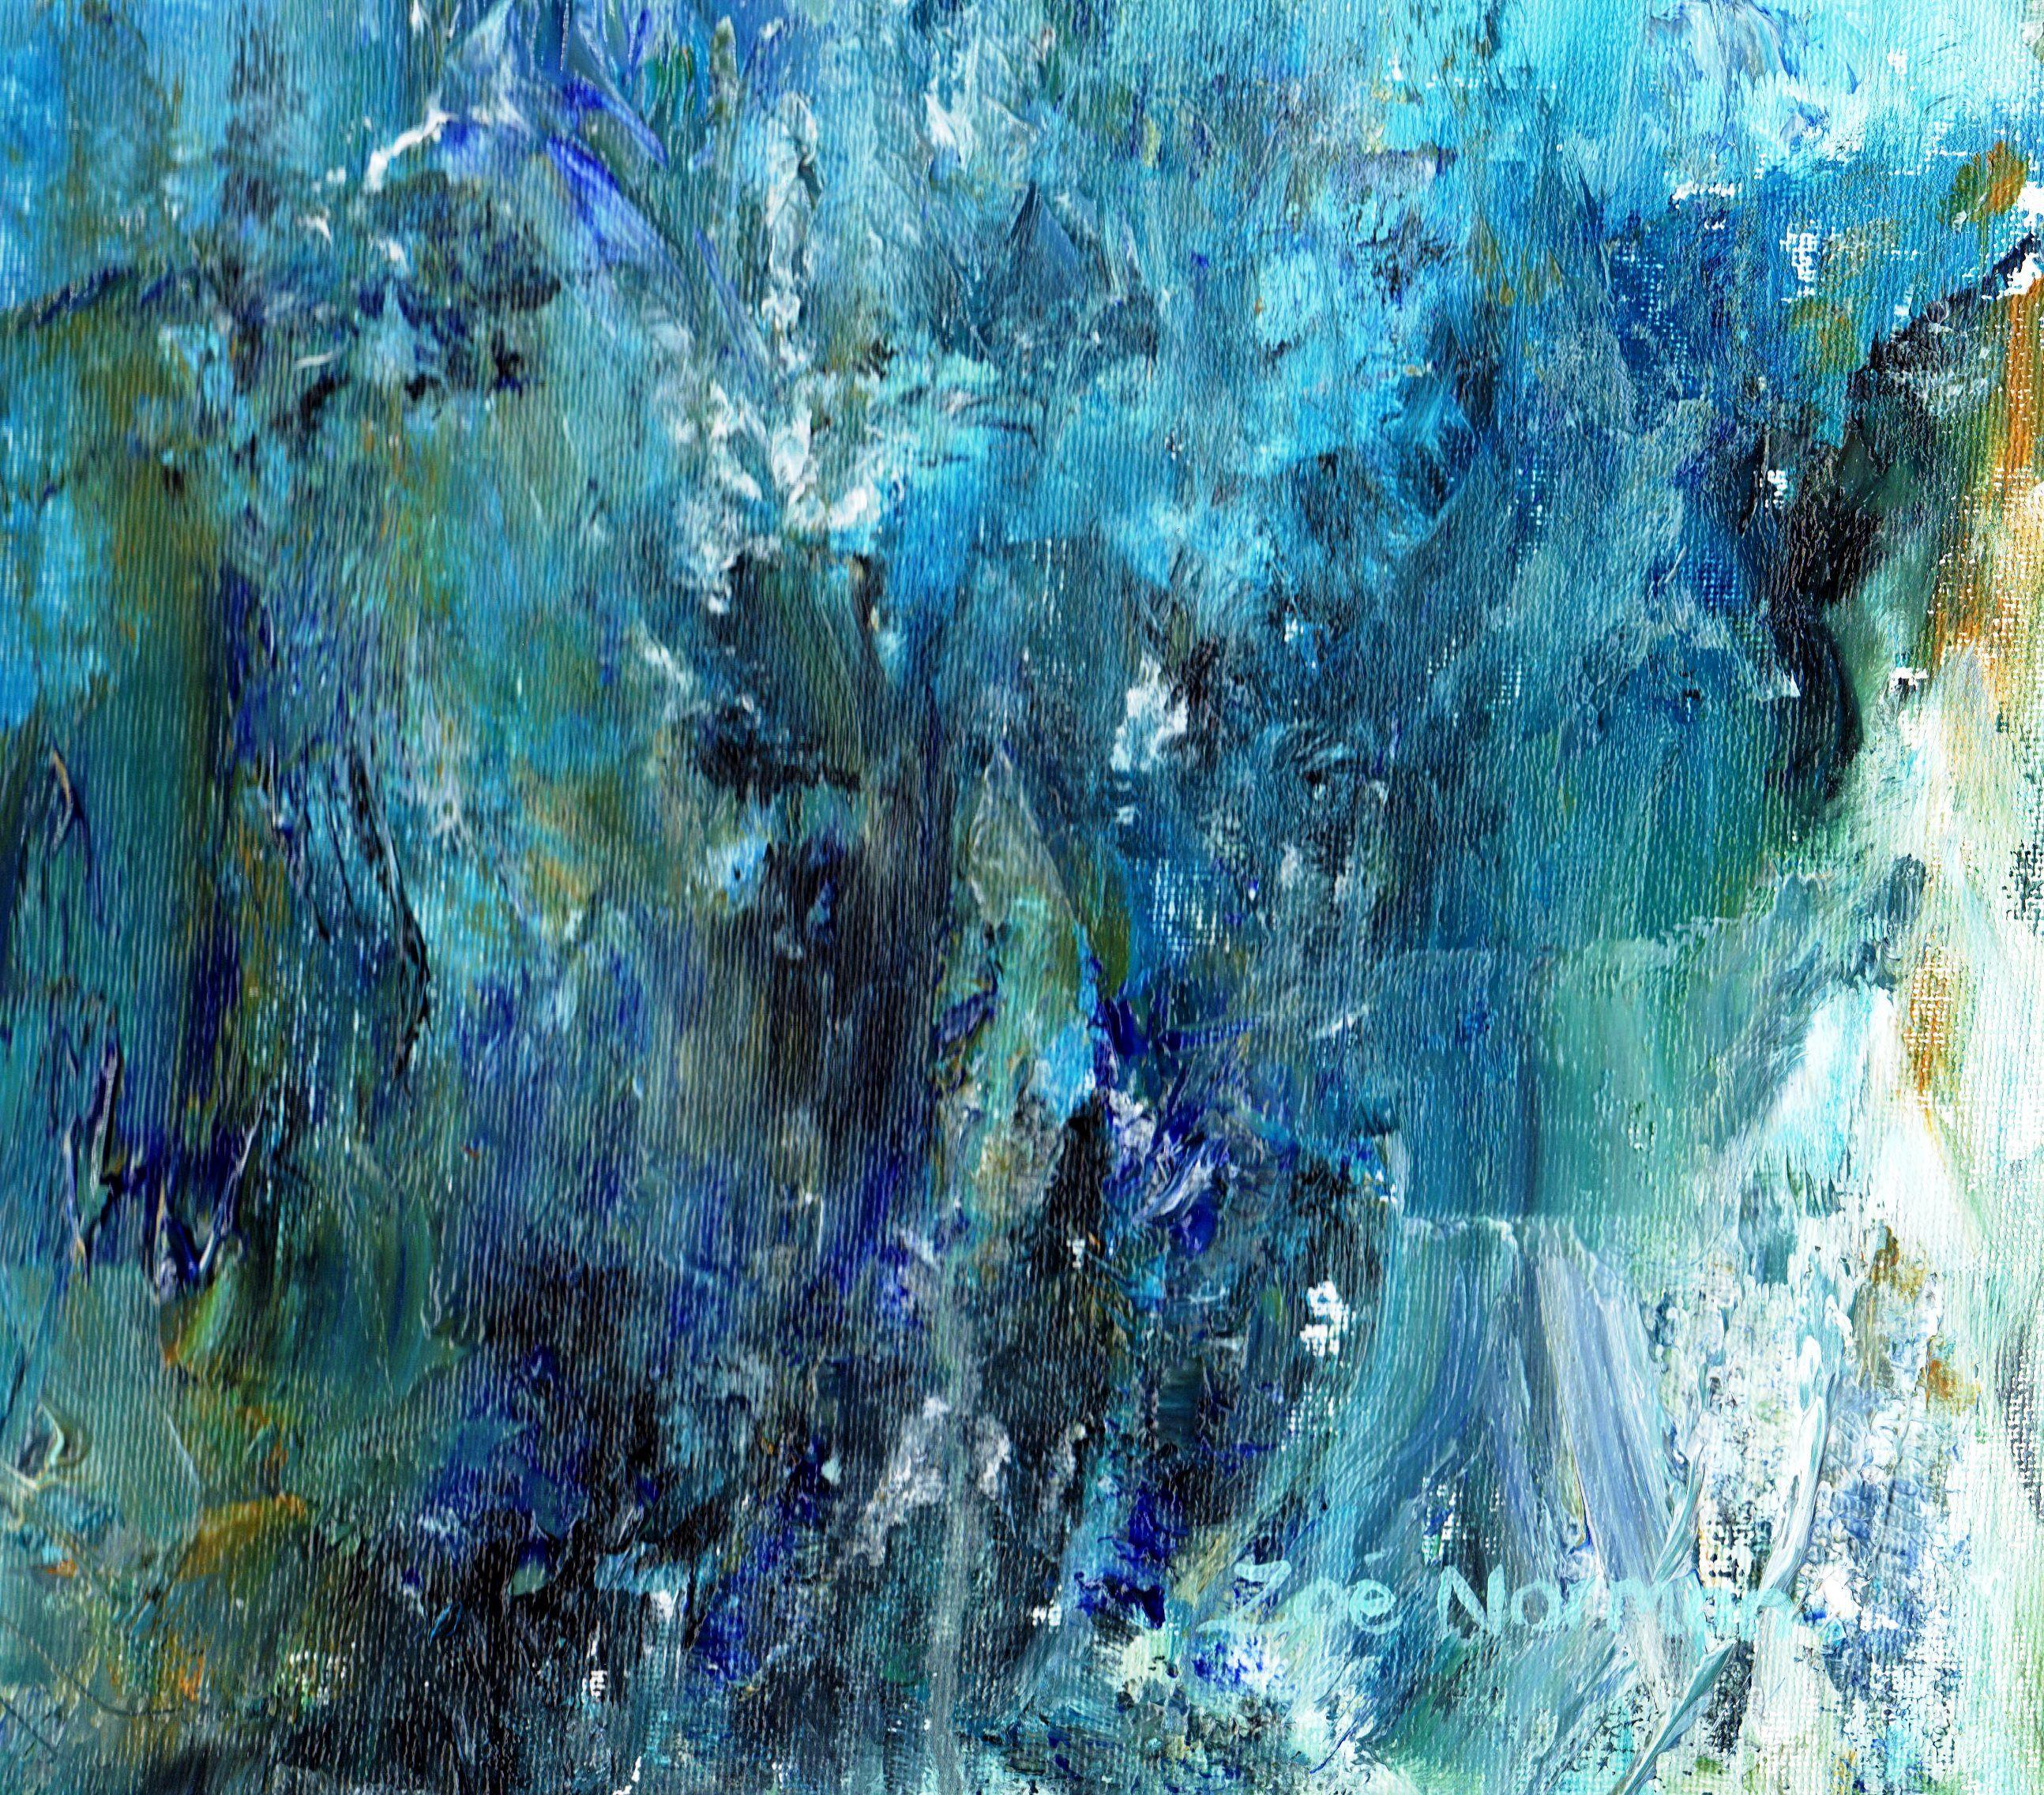 Mer abstraite - The Deep, peinture, huile sur toile - Abstrait Painting par Zoe Elizabeth Norman